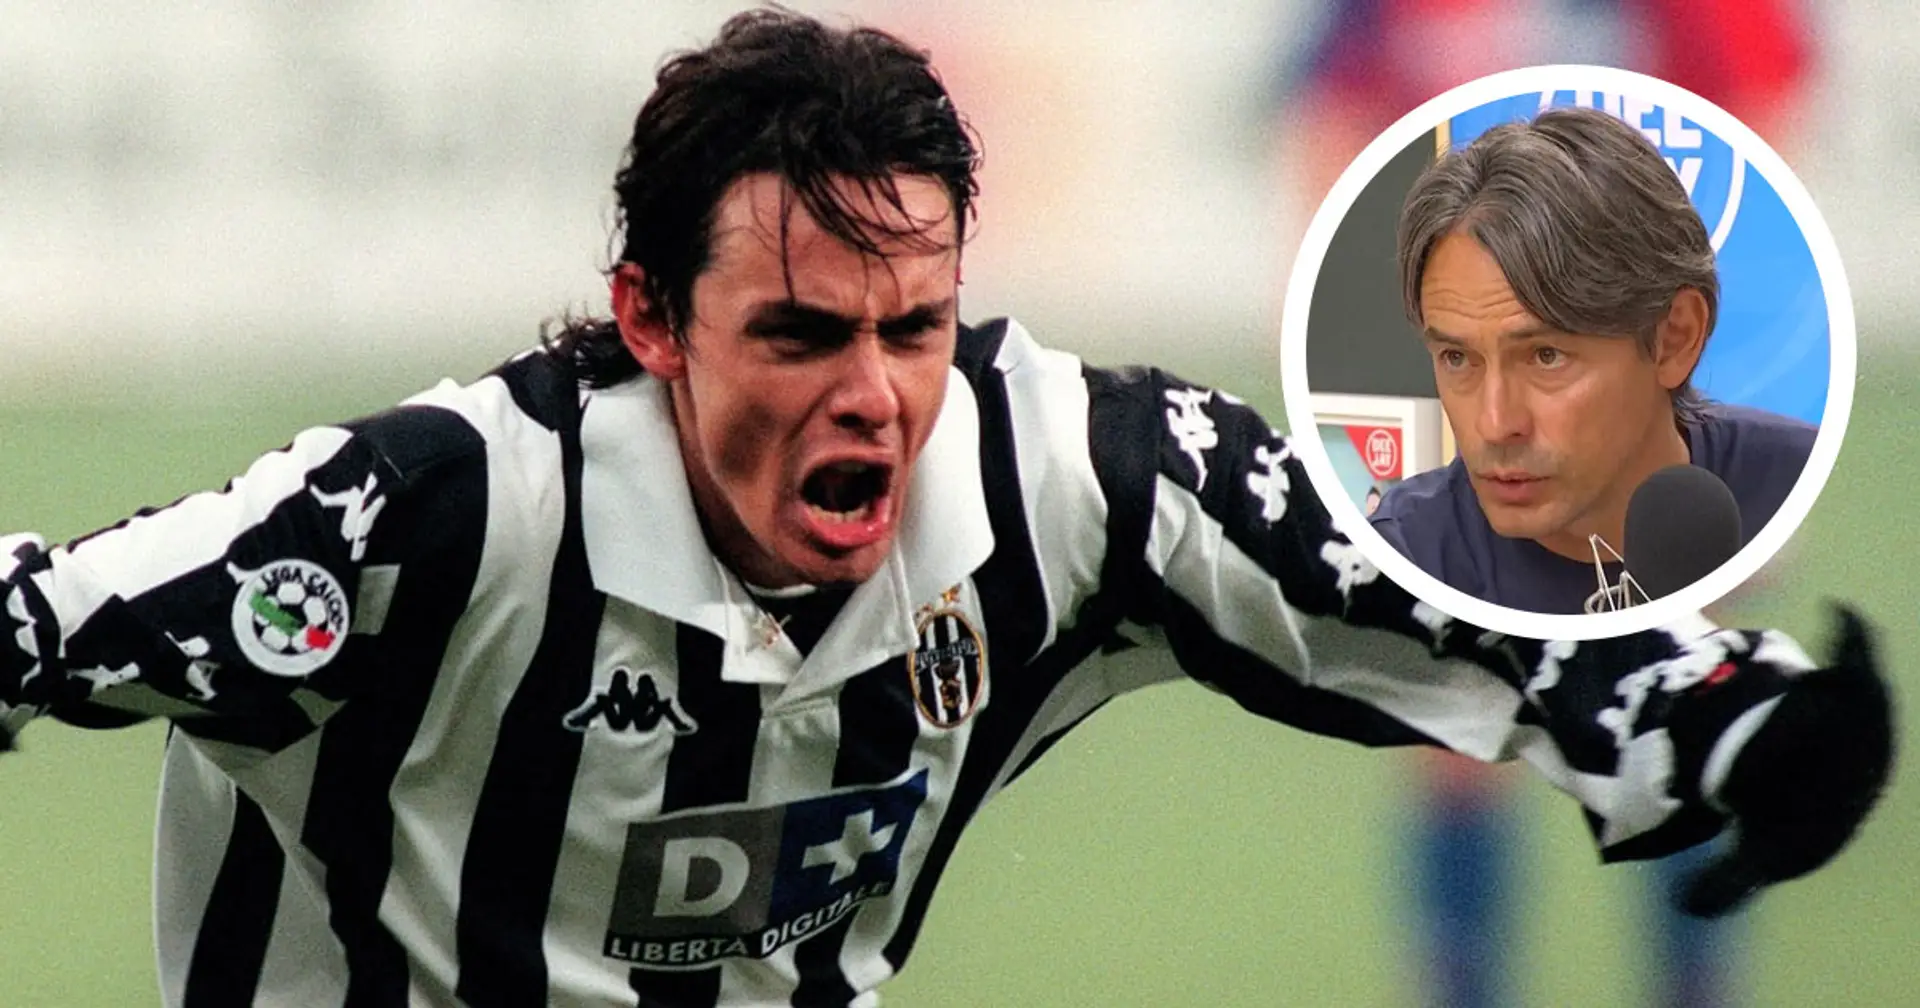 "Rinunciai a 5 miliardi per lasciare la Juventus", Pippo Inzaghi rivela un retroscena sull'addio ai Bianconeri